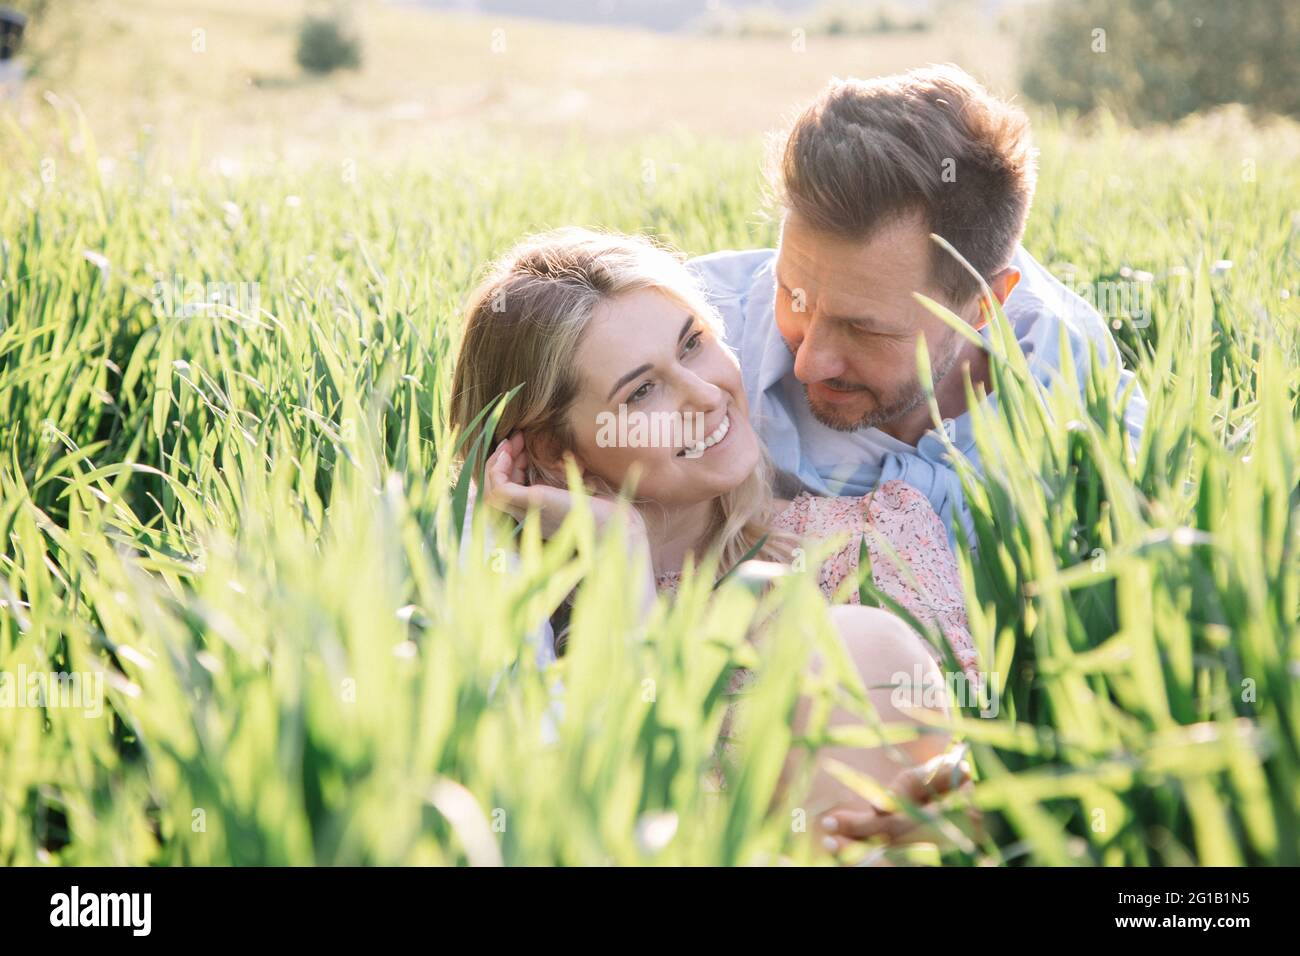 Flirten und lächeln der jungen schönen Blondine auf dem ersten Date mit dem Mann. Foto eines Paares, das im grünen Gras sitzt Stockfoto